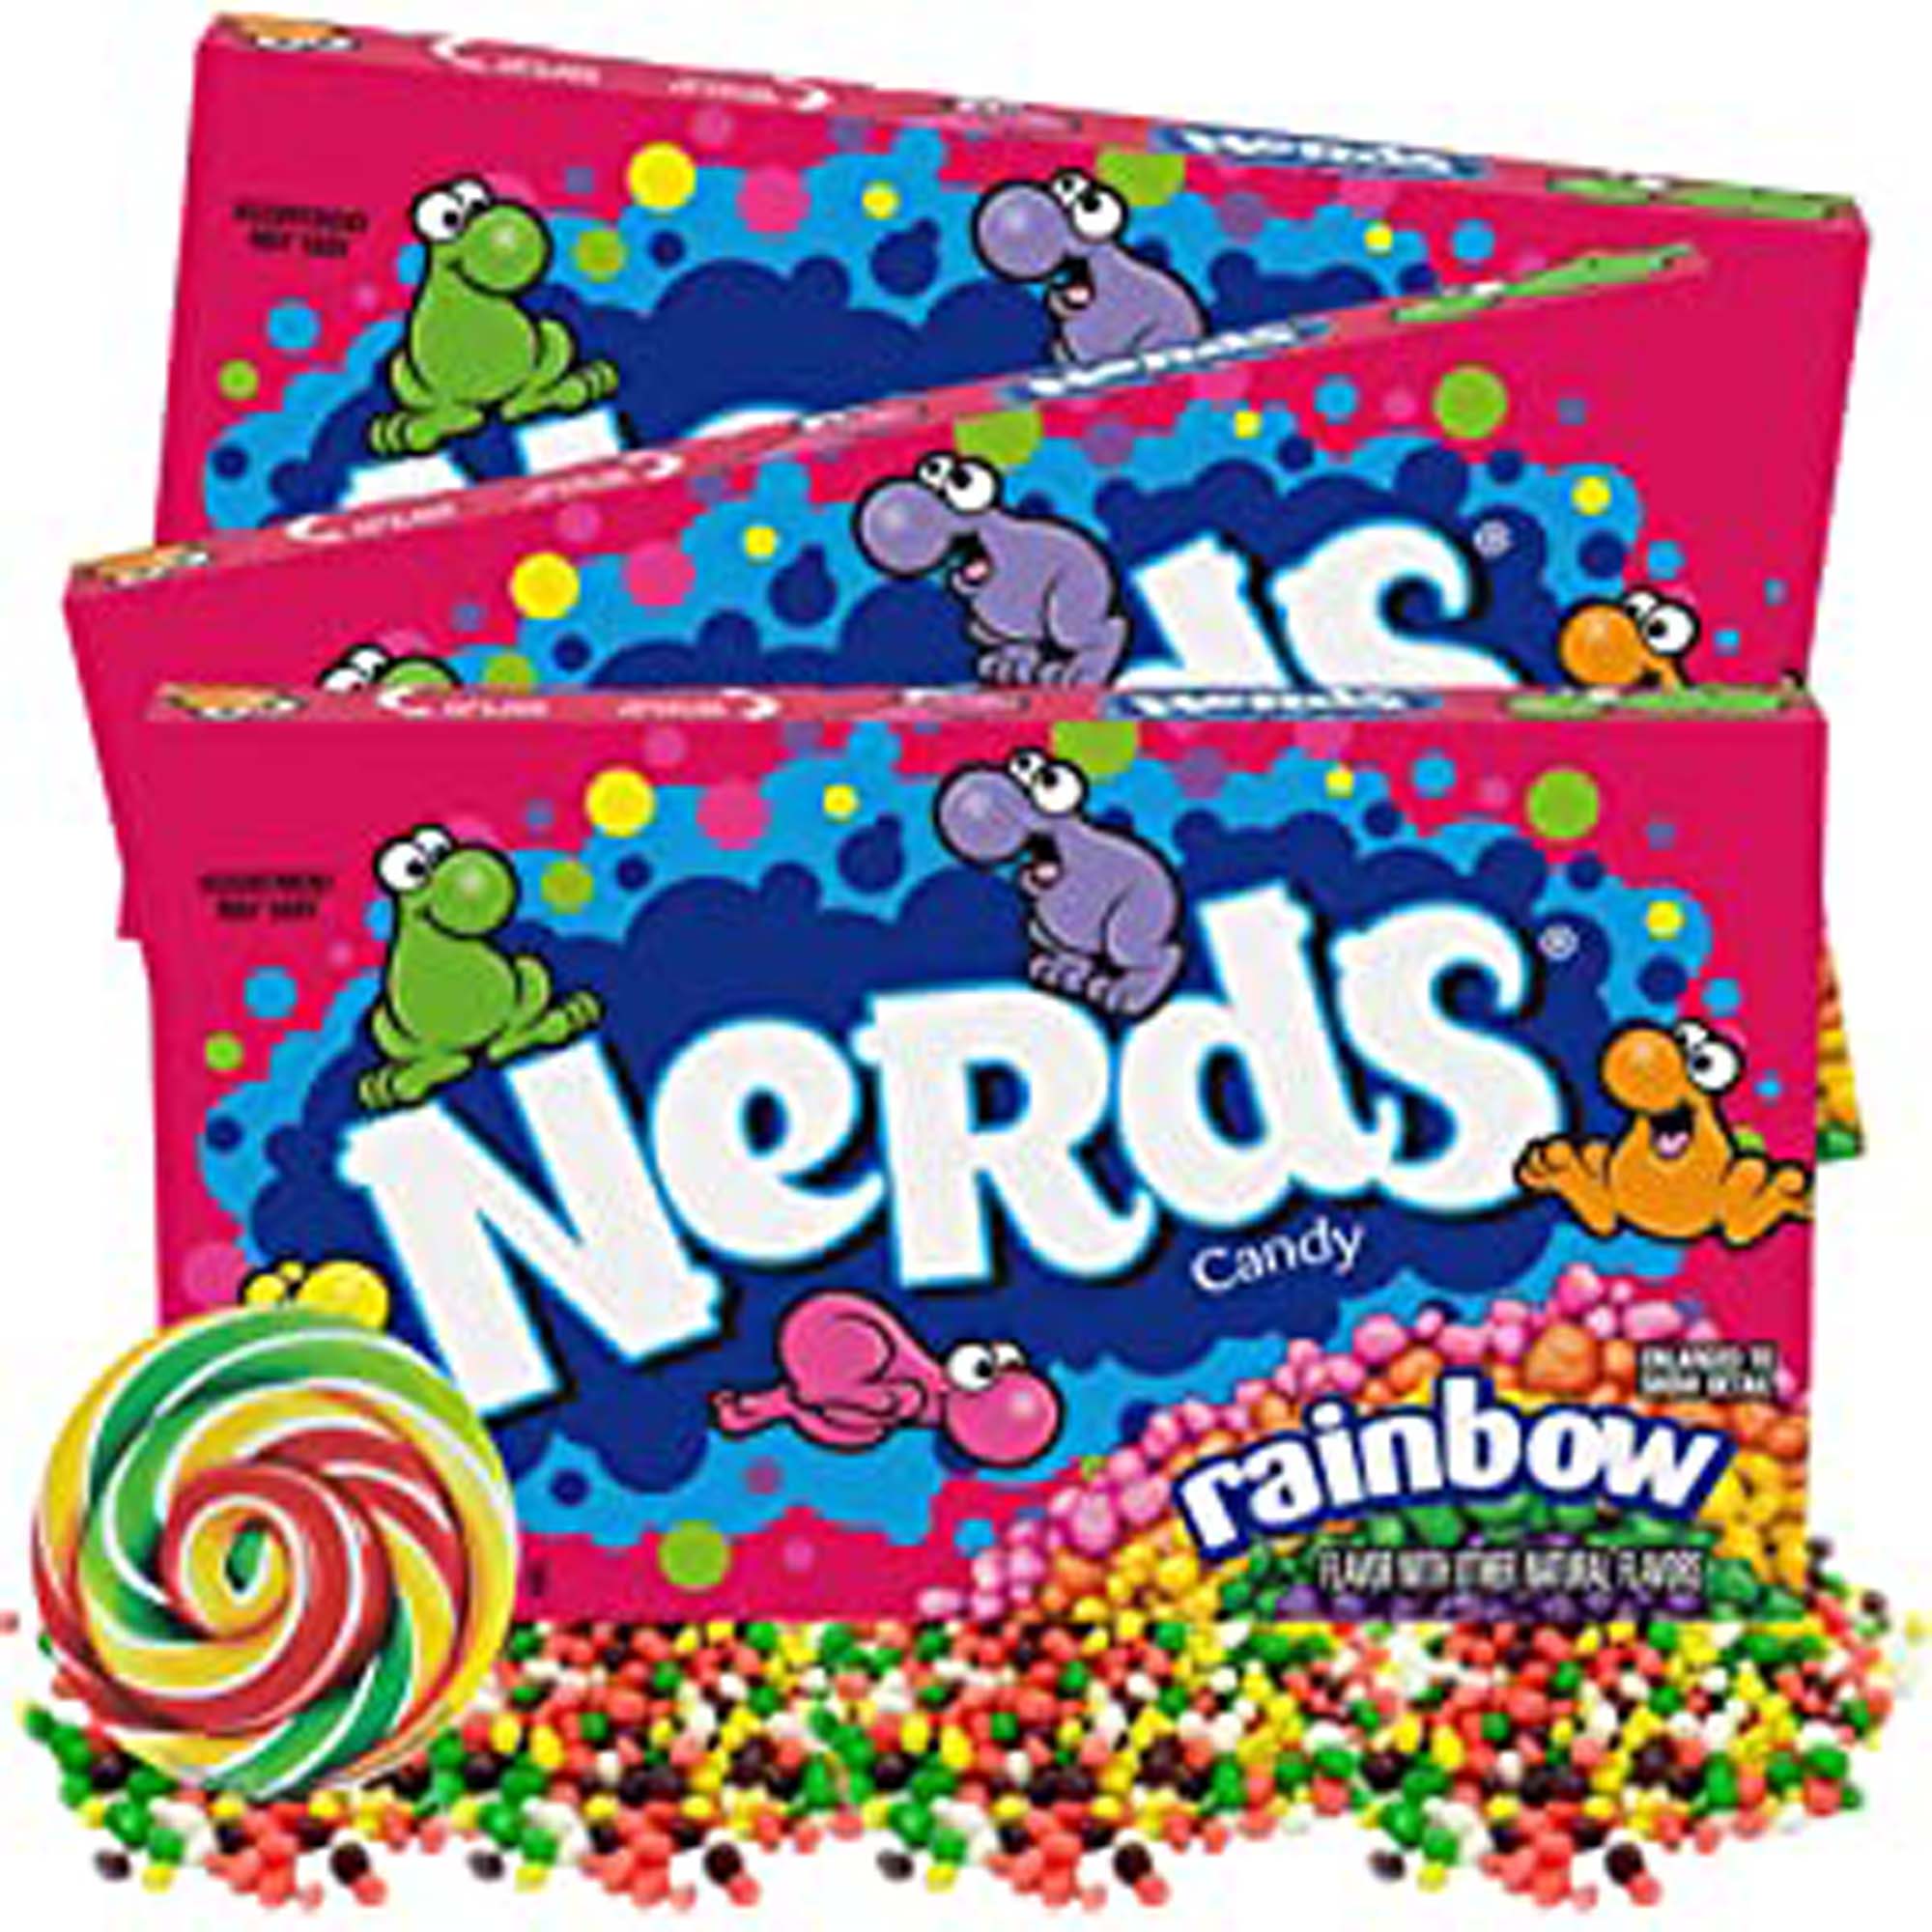 http://www.party-expert.com/cdn/shop/files/confiserie-mondoux-inc-candy-wonka-nerds-rainbow-candy-142g-33166288912570.jpg?v=1683035606&width=2000